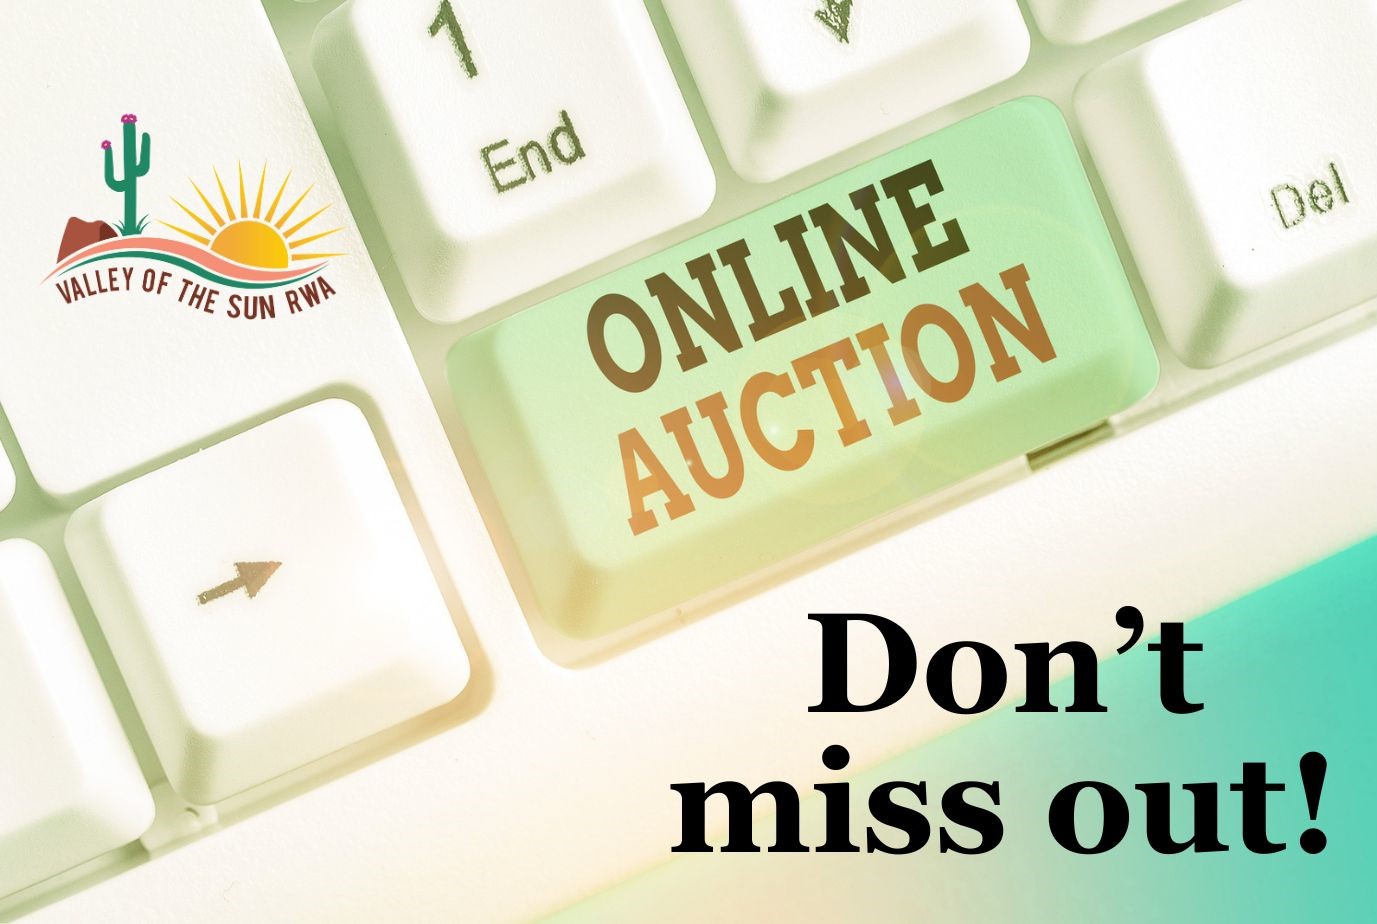 Online auction<br />
